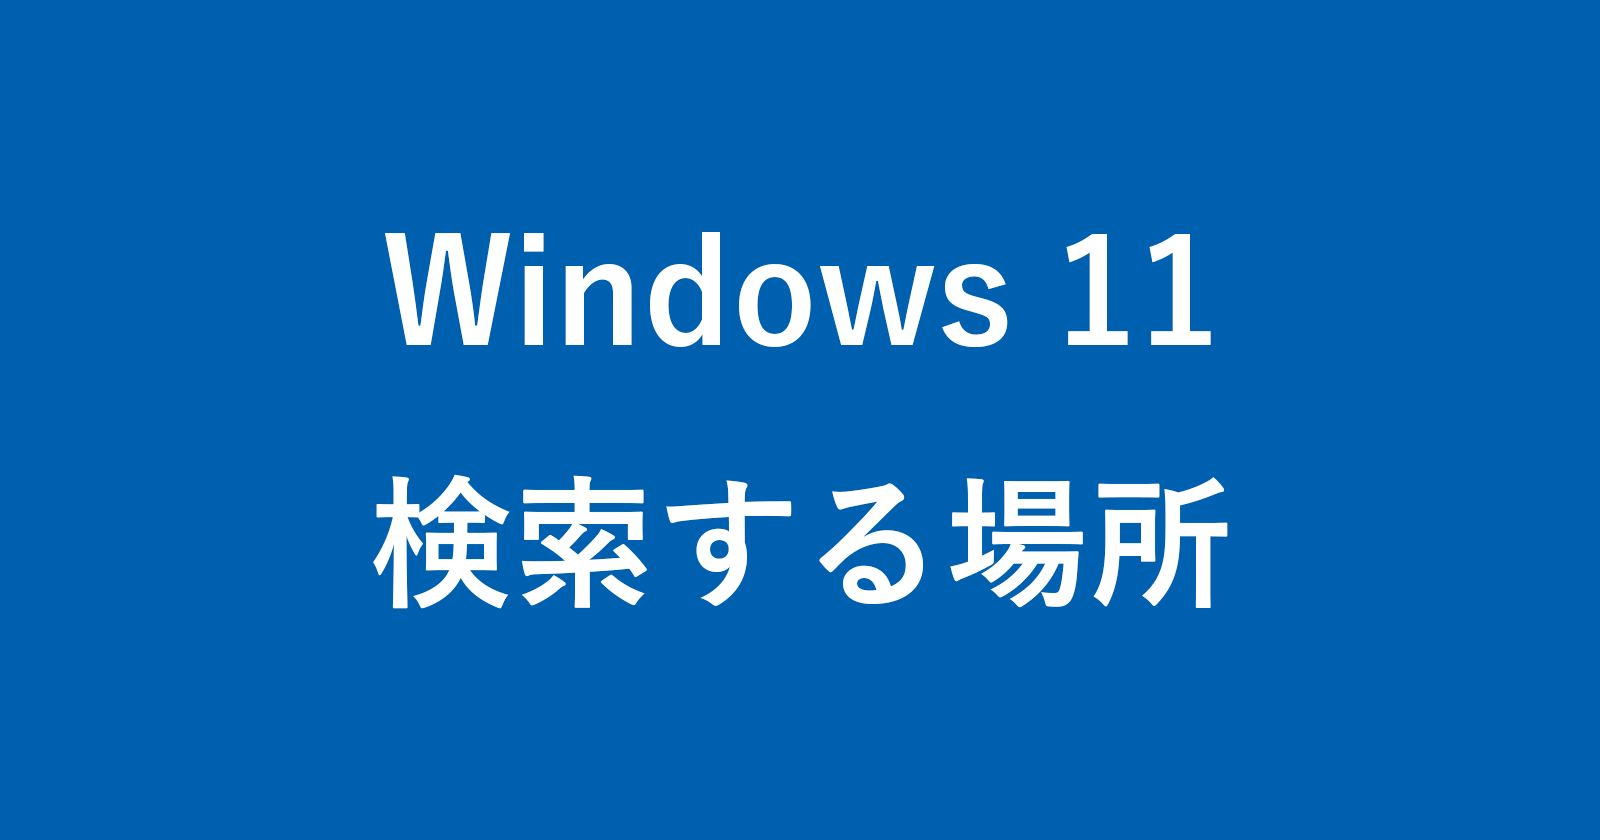 windows 11 search location